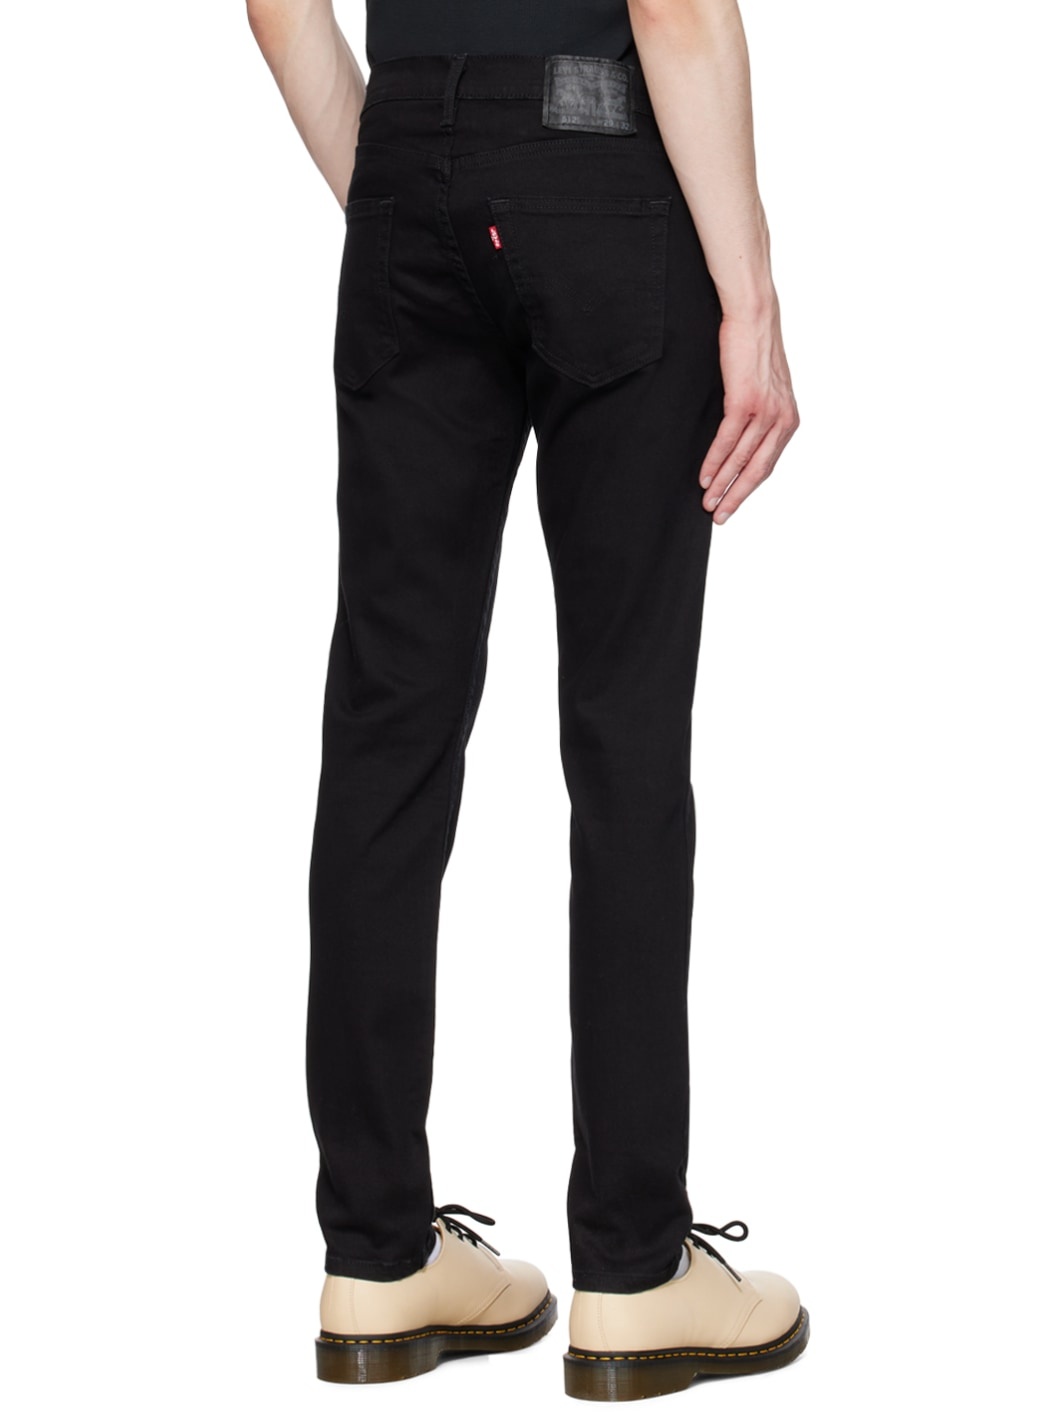 Black 512 Slim Taper Jeans - 3